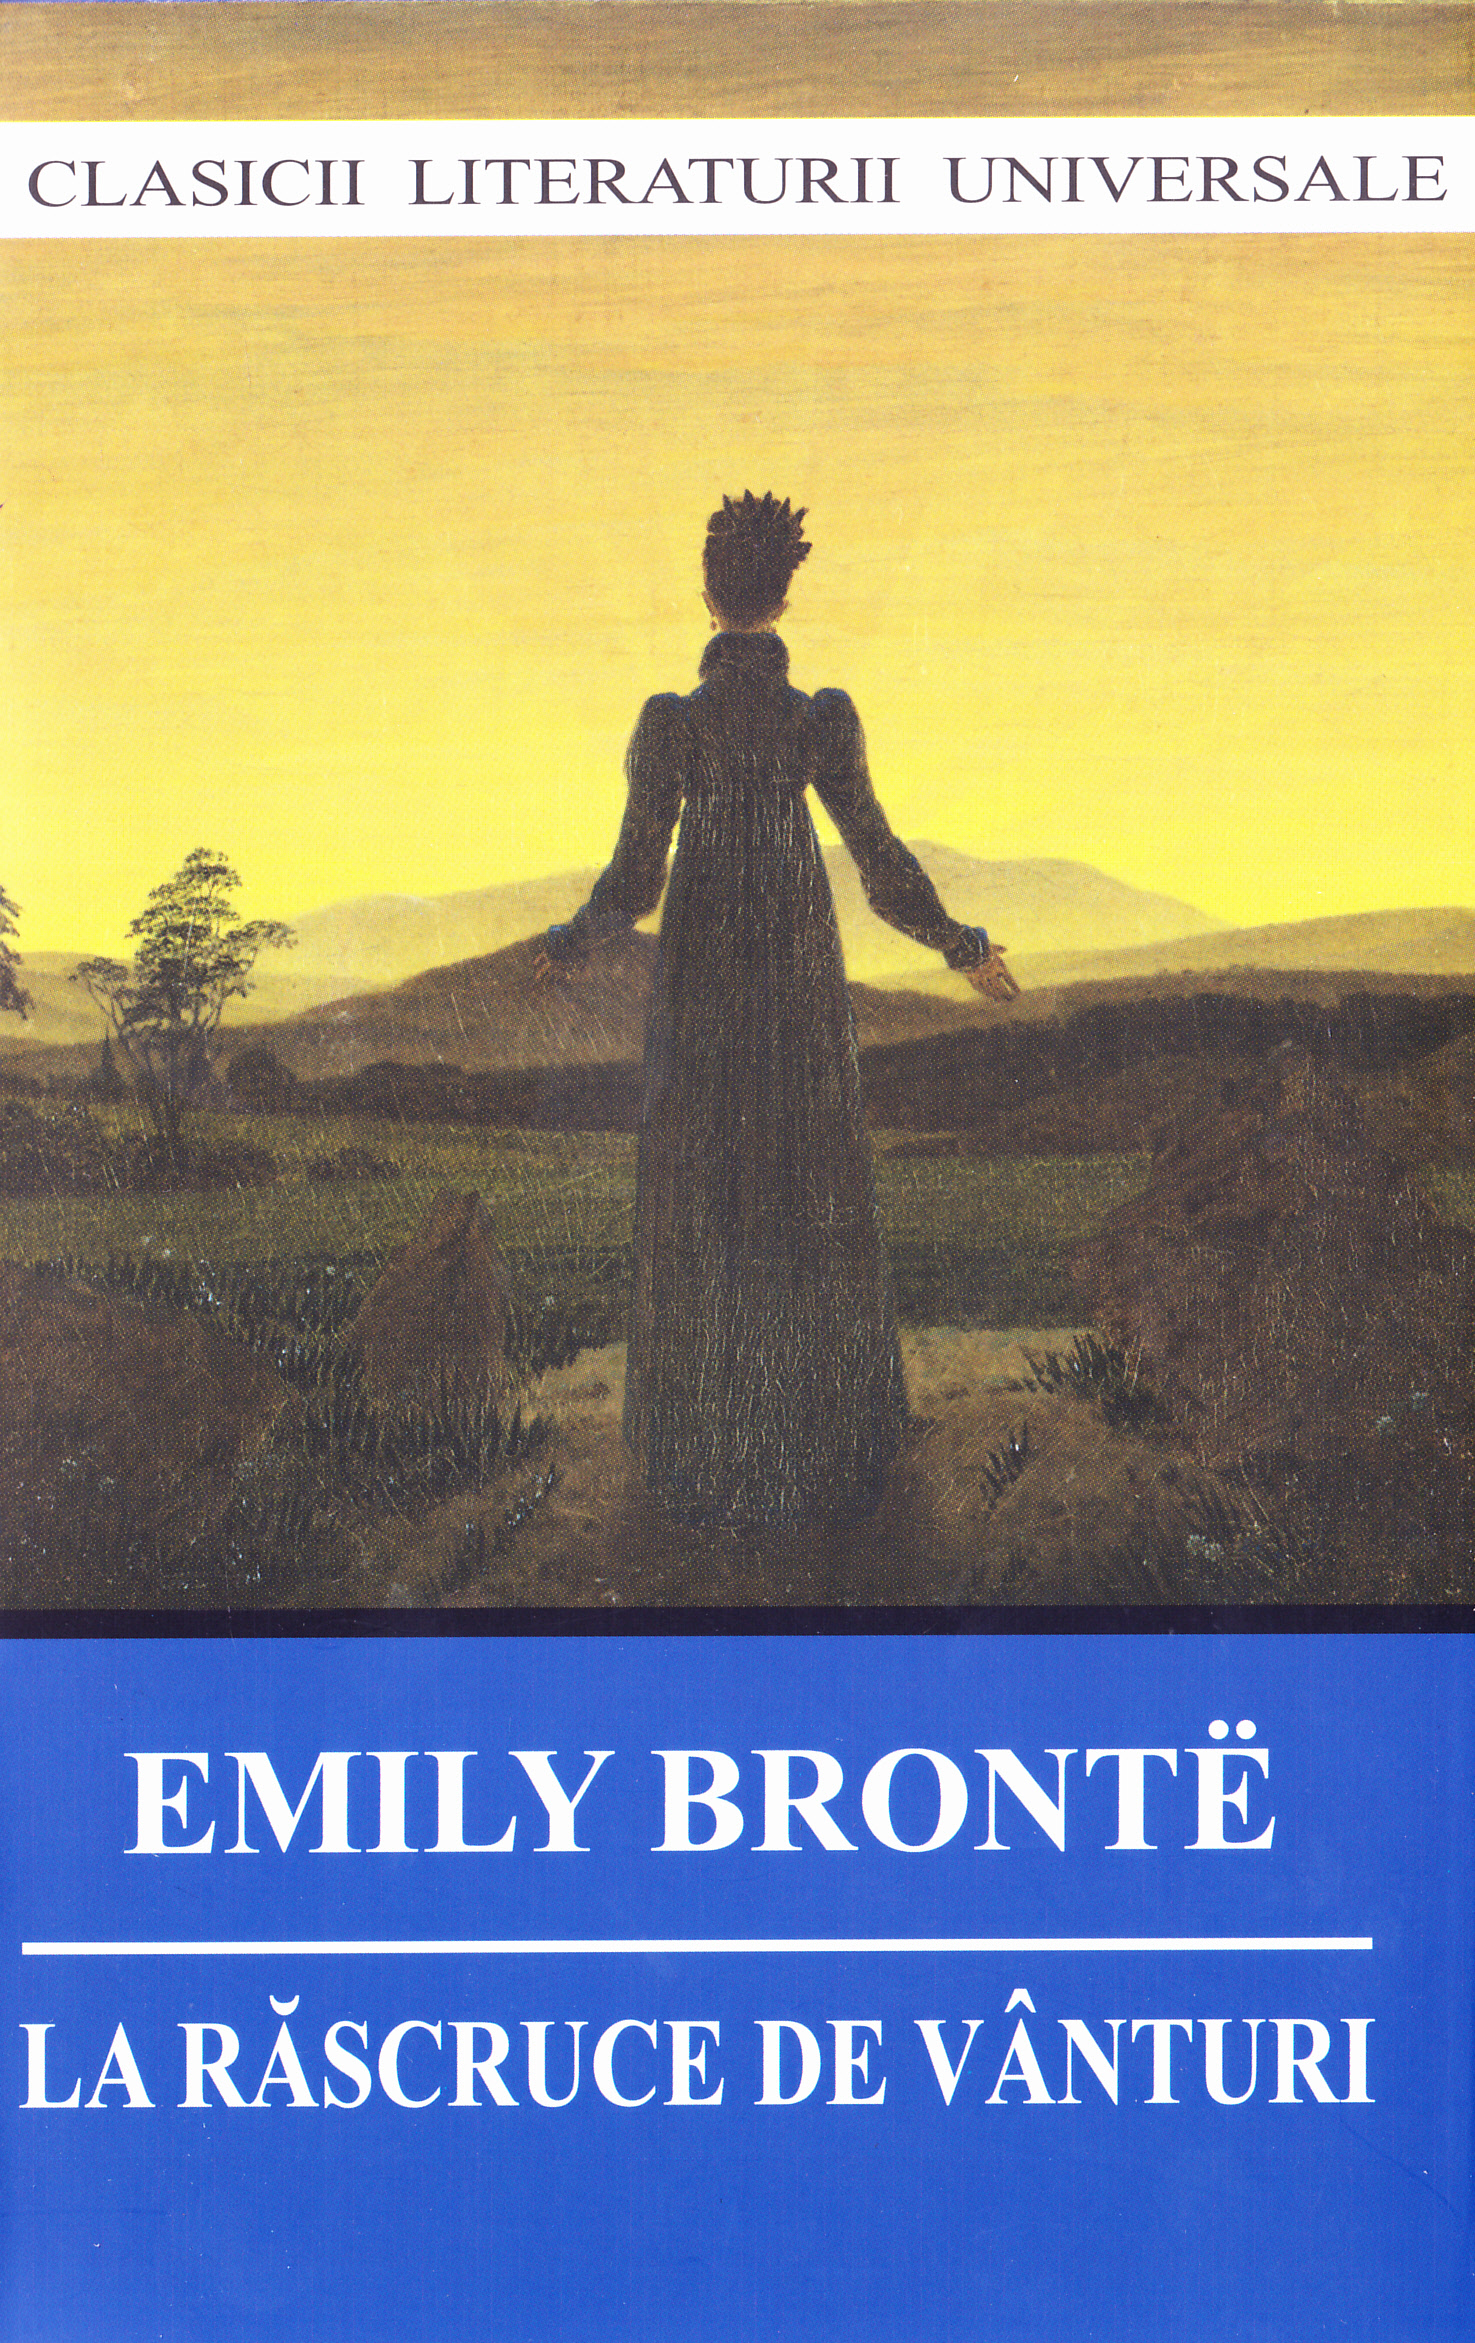 La rascruce de vanturi ed.2017 - Emily Bronte